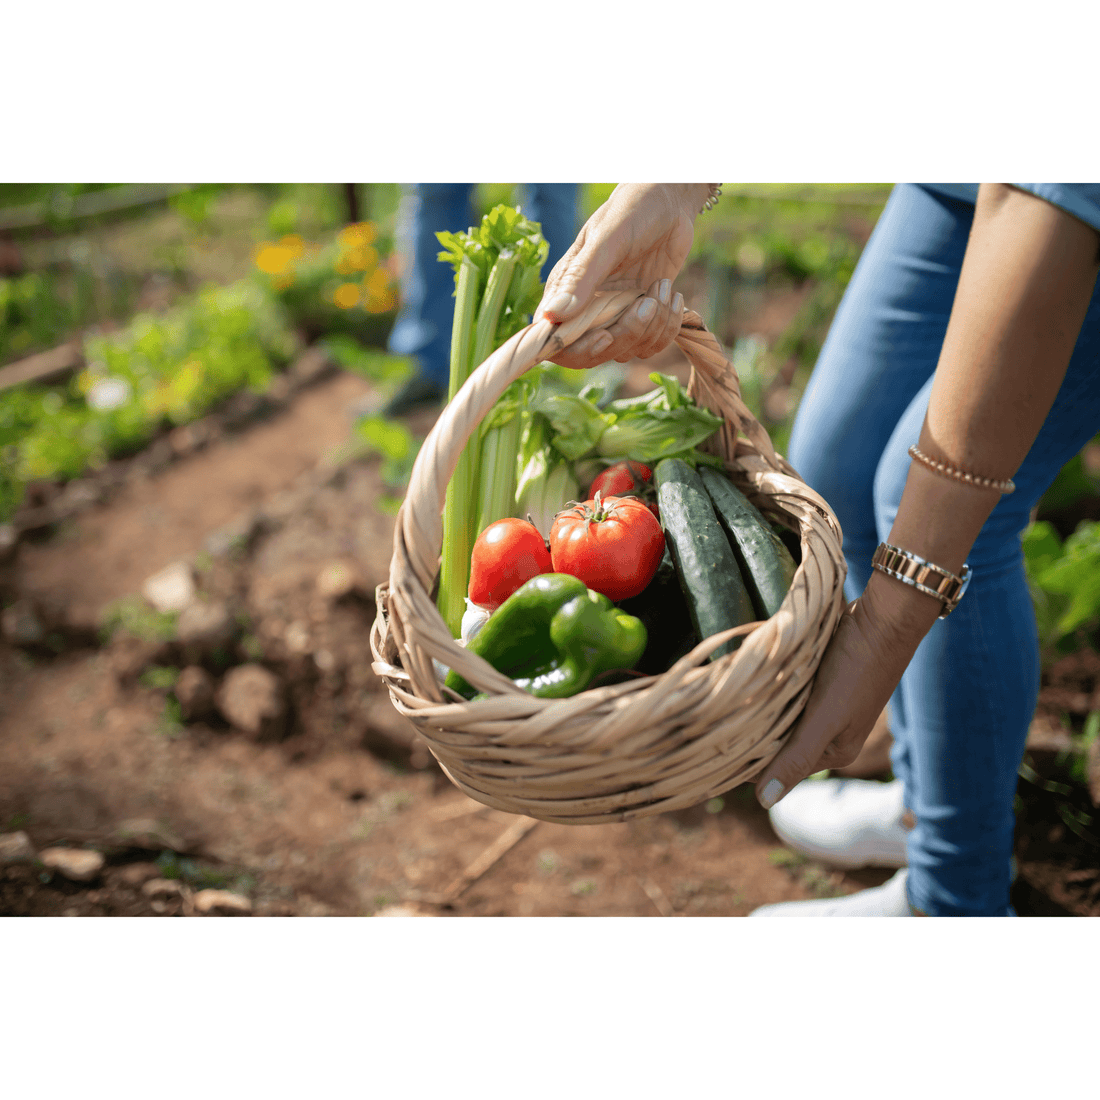 Vegetable Basket - White's Family Farmhouse 